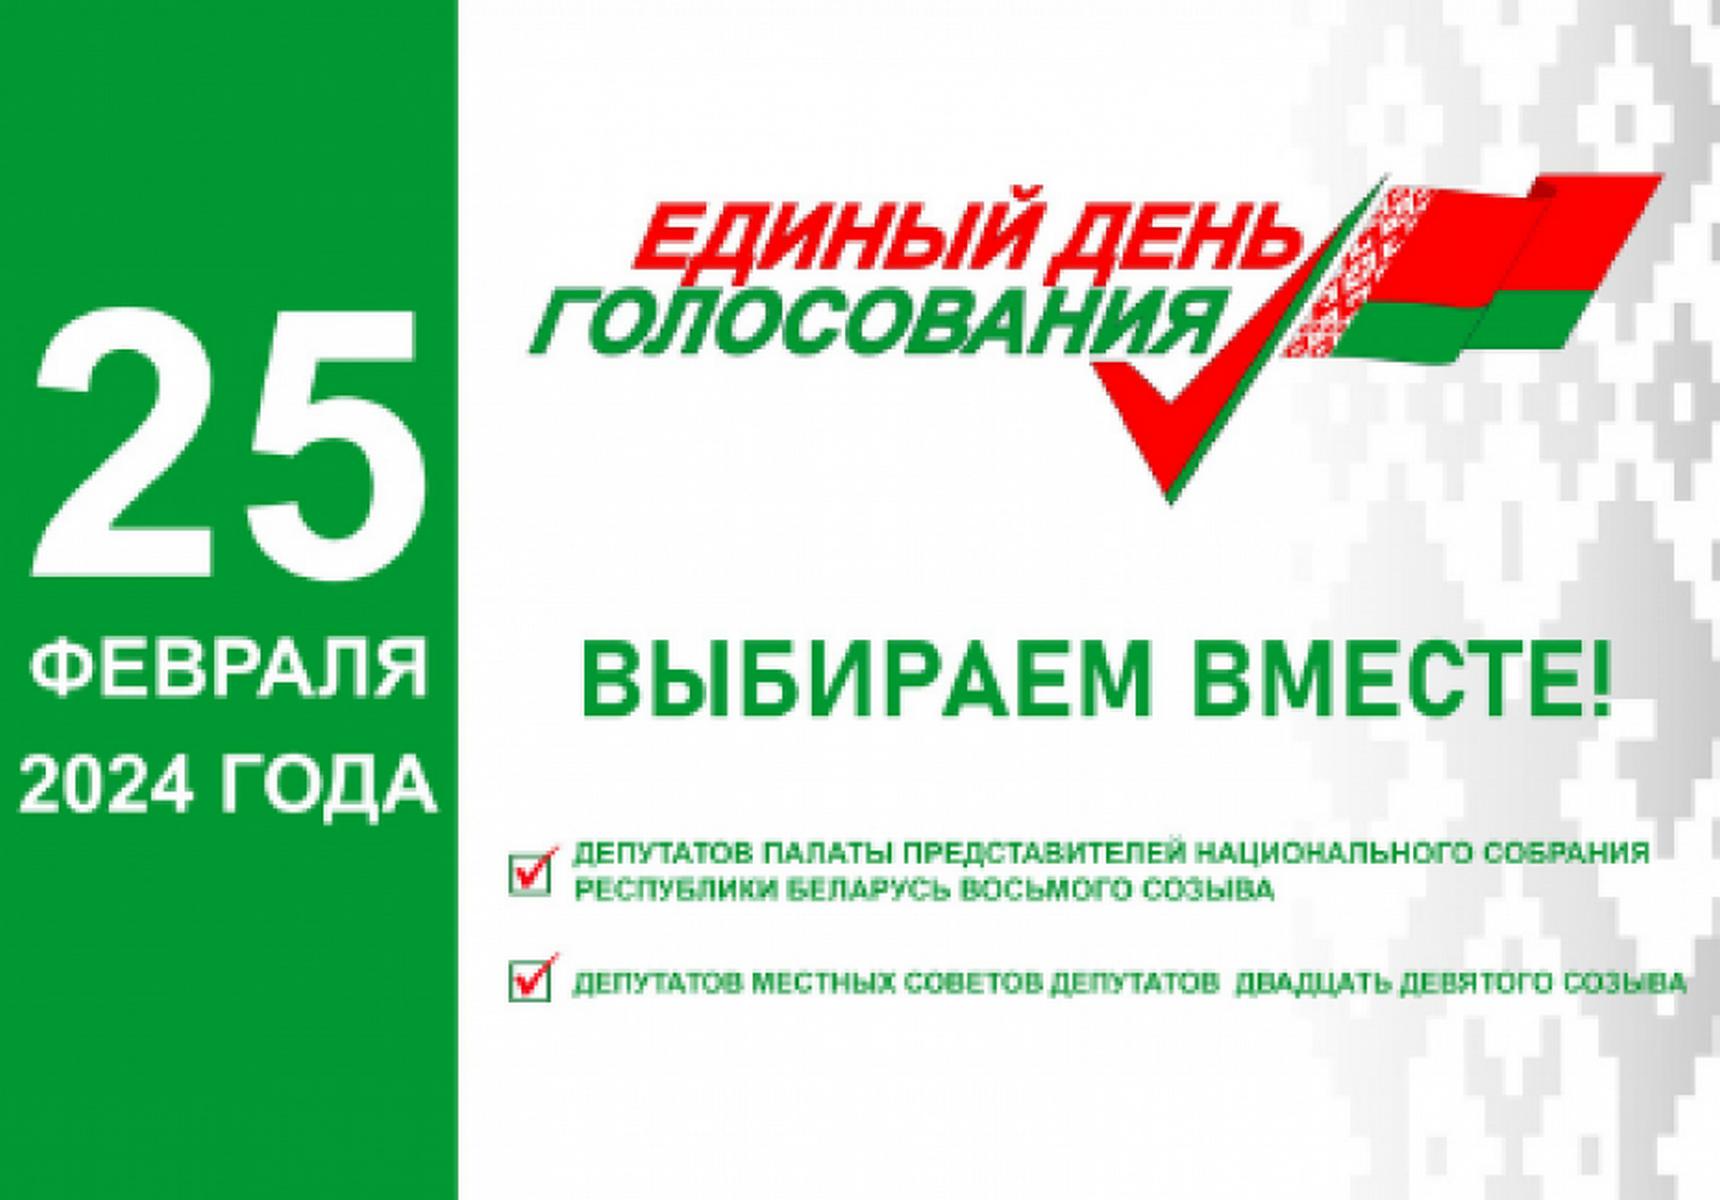 Единый день голосования пройдёт в Беларуси 25 февраля 2024 года